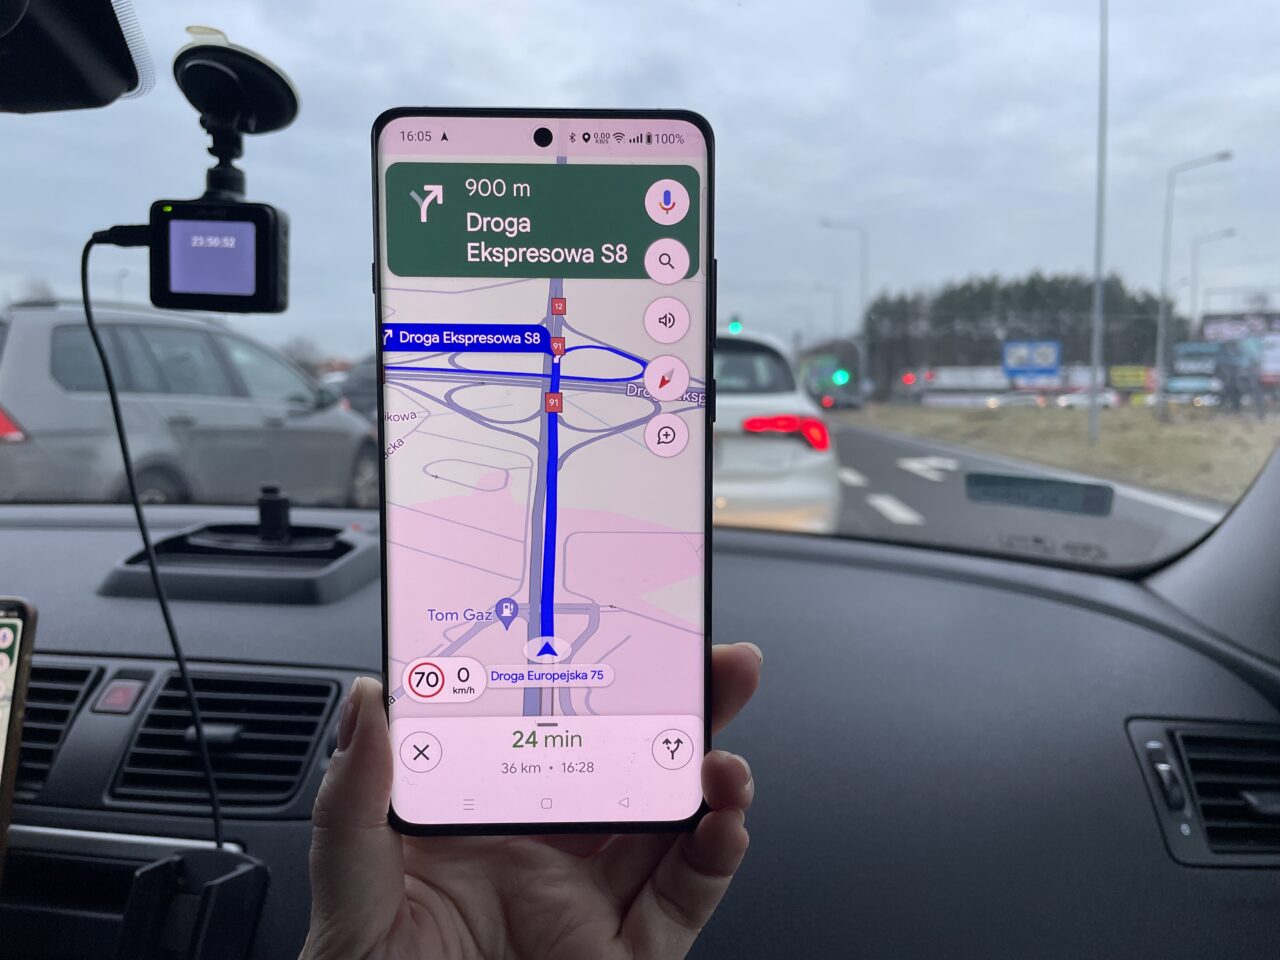 Ręka trzymająca smartfon z włączoną aplikacją nawigacyjną pokazującą trasę na drodze ekspresowej S8, w tle widoczna rozmyta sceneria drogi i inne pojazdy.